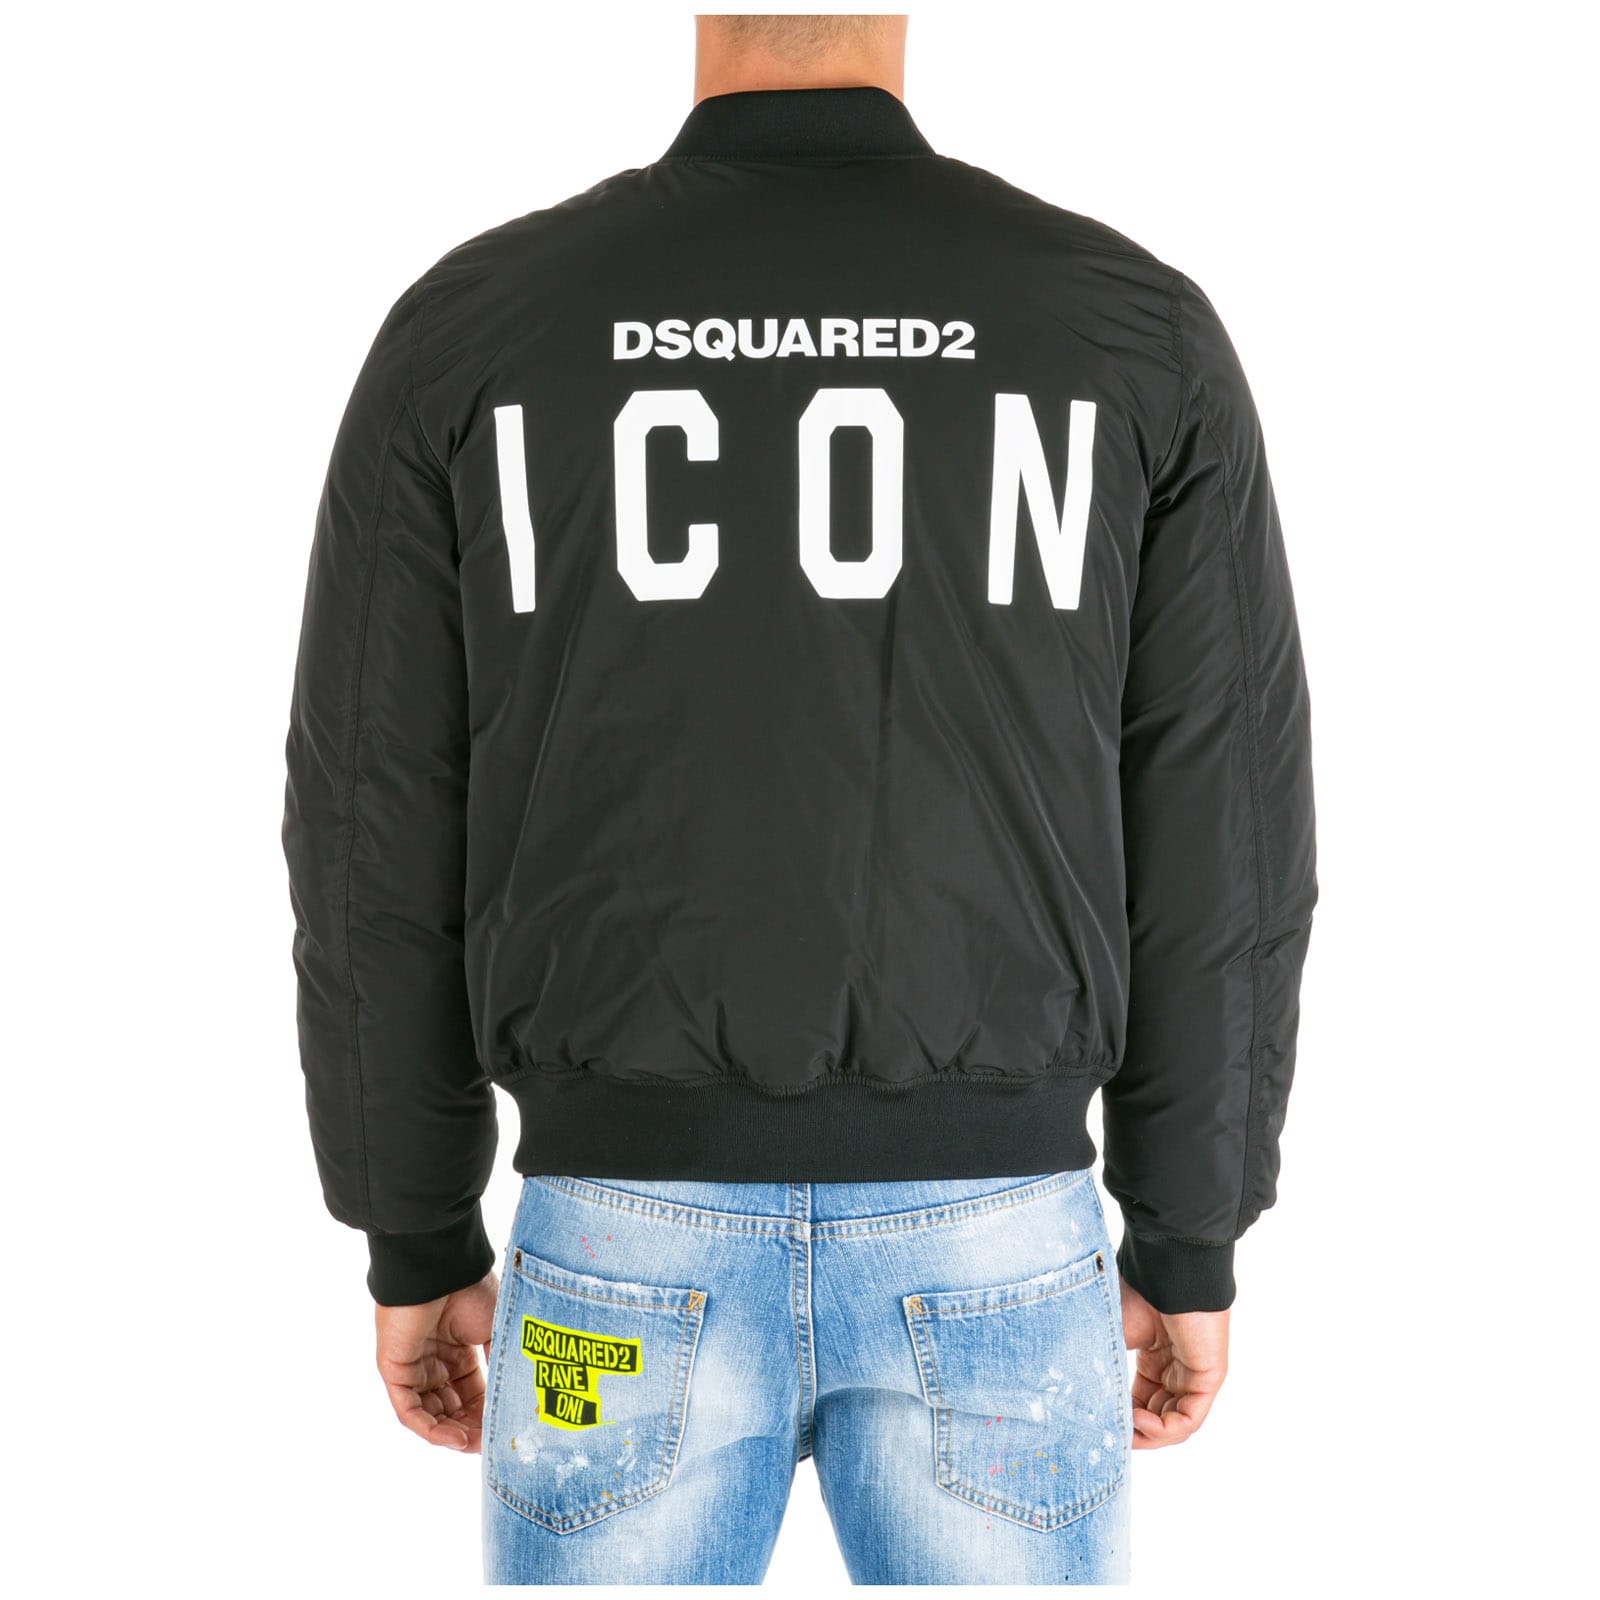 dsquared2 icon jacket